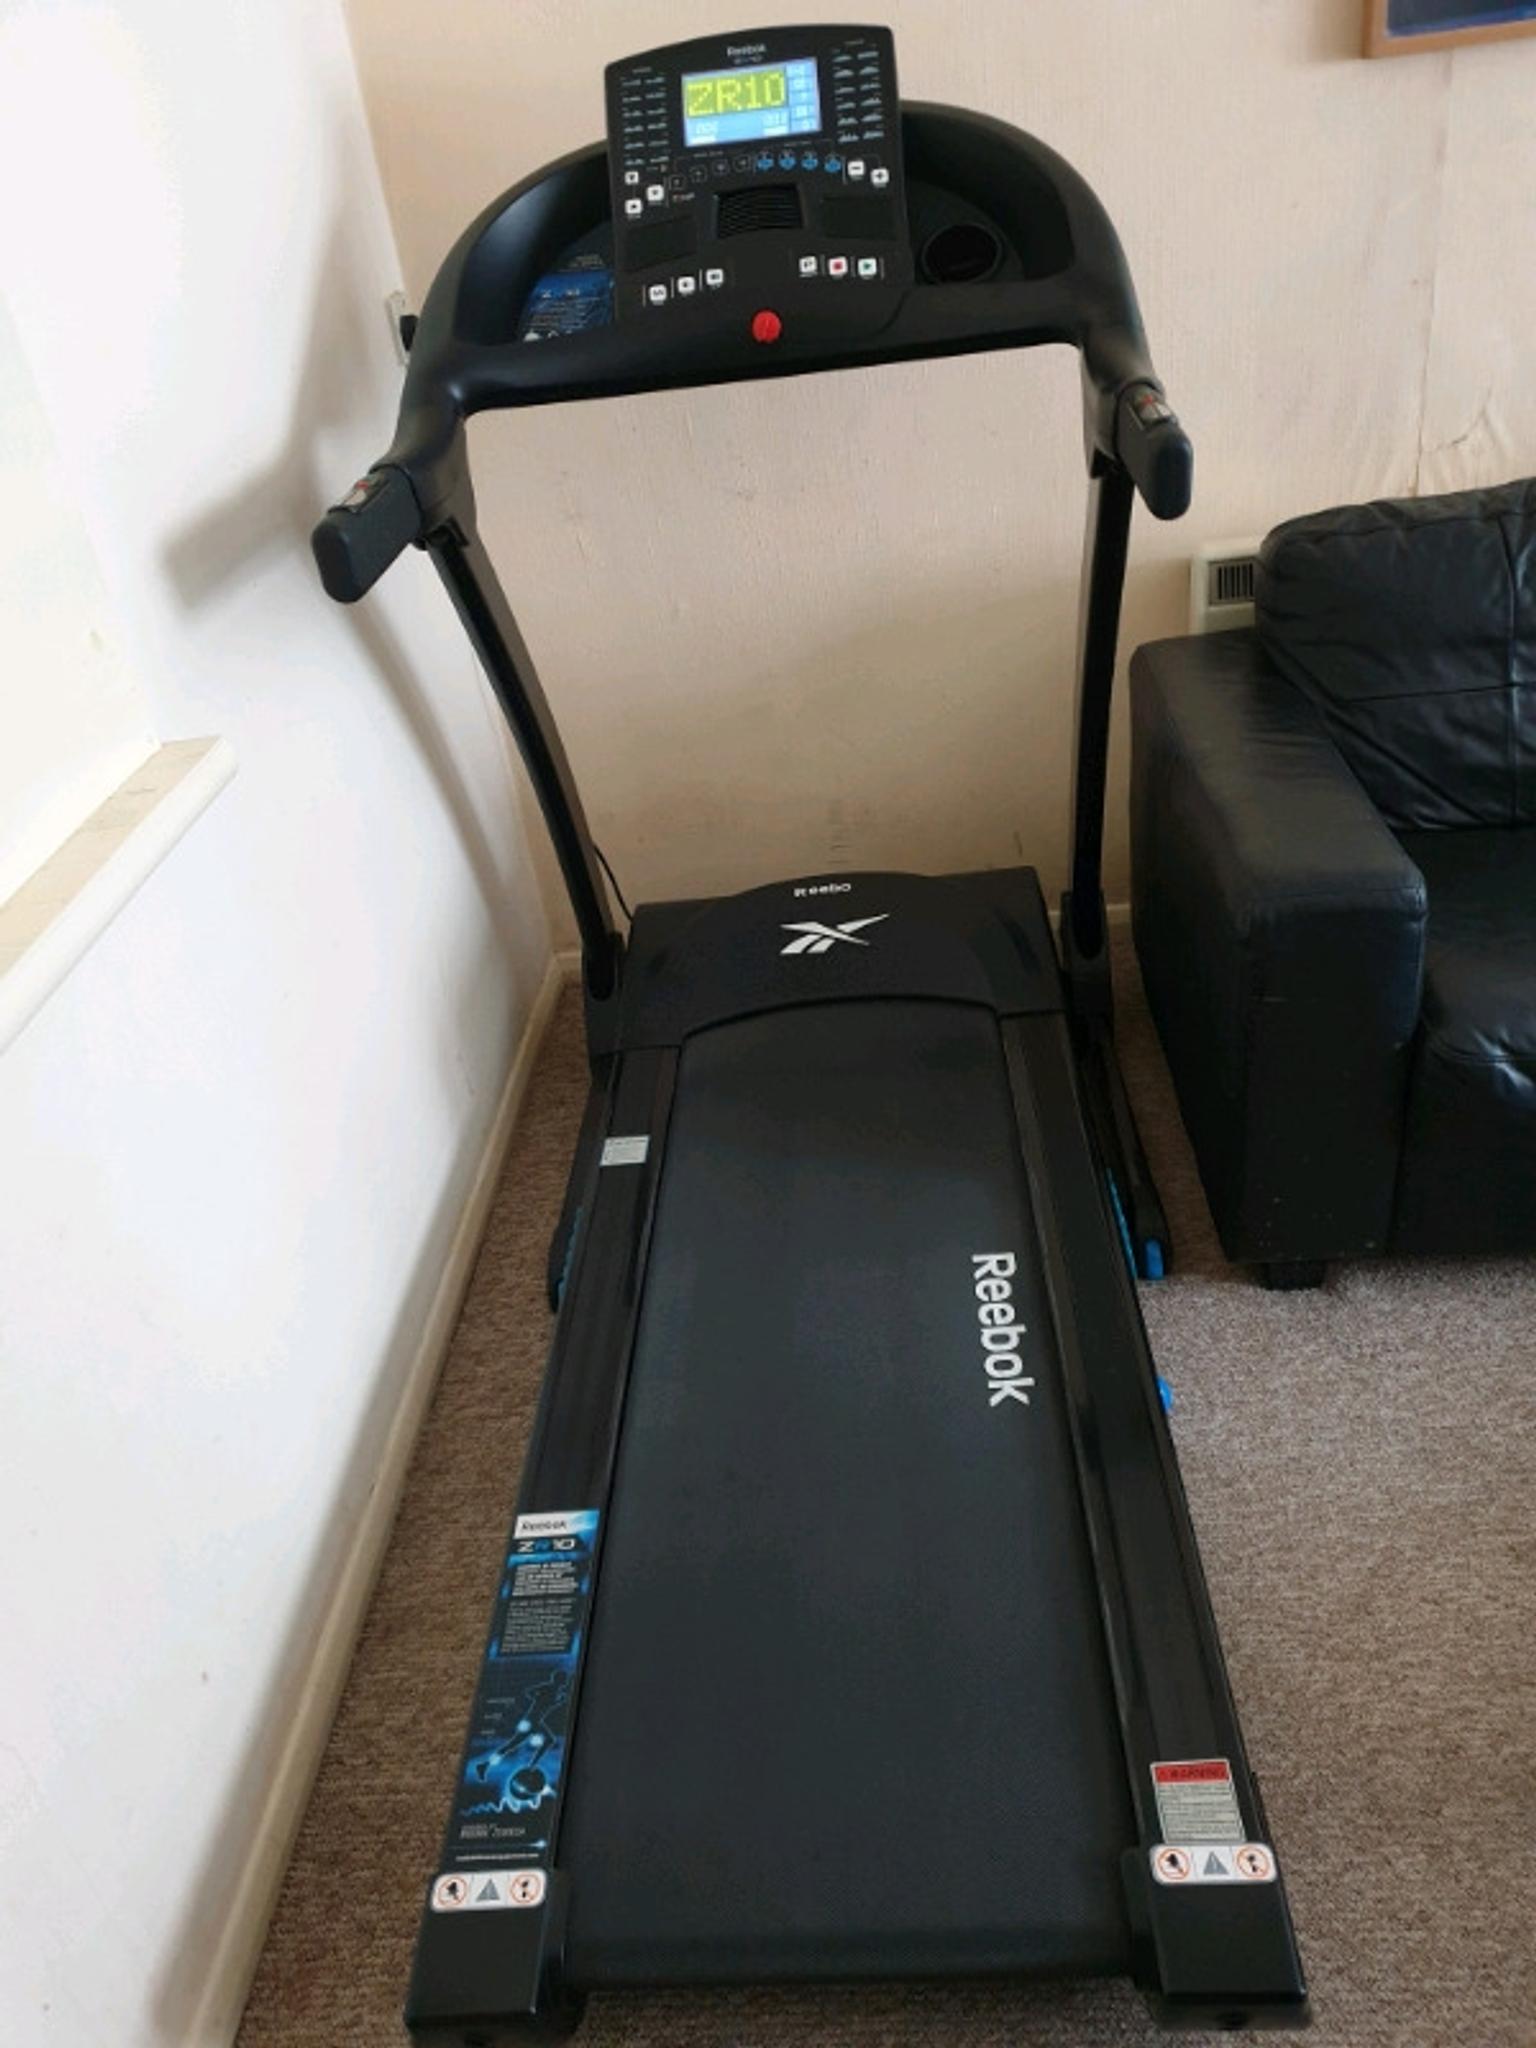 reebok zr10 treadmill parts